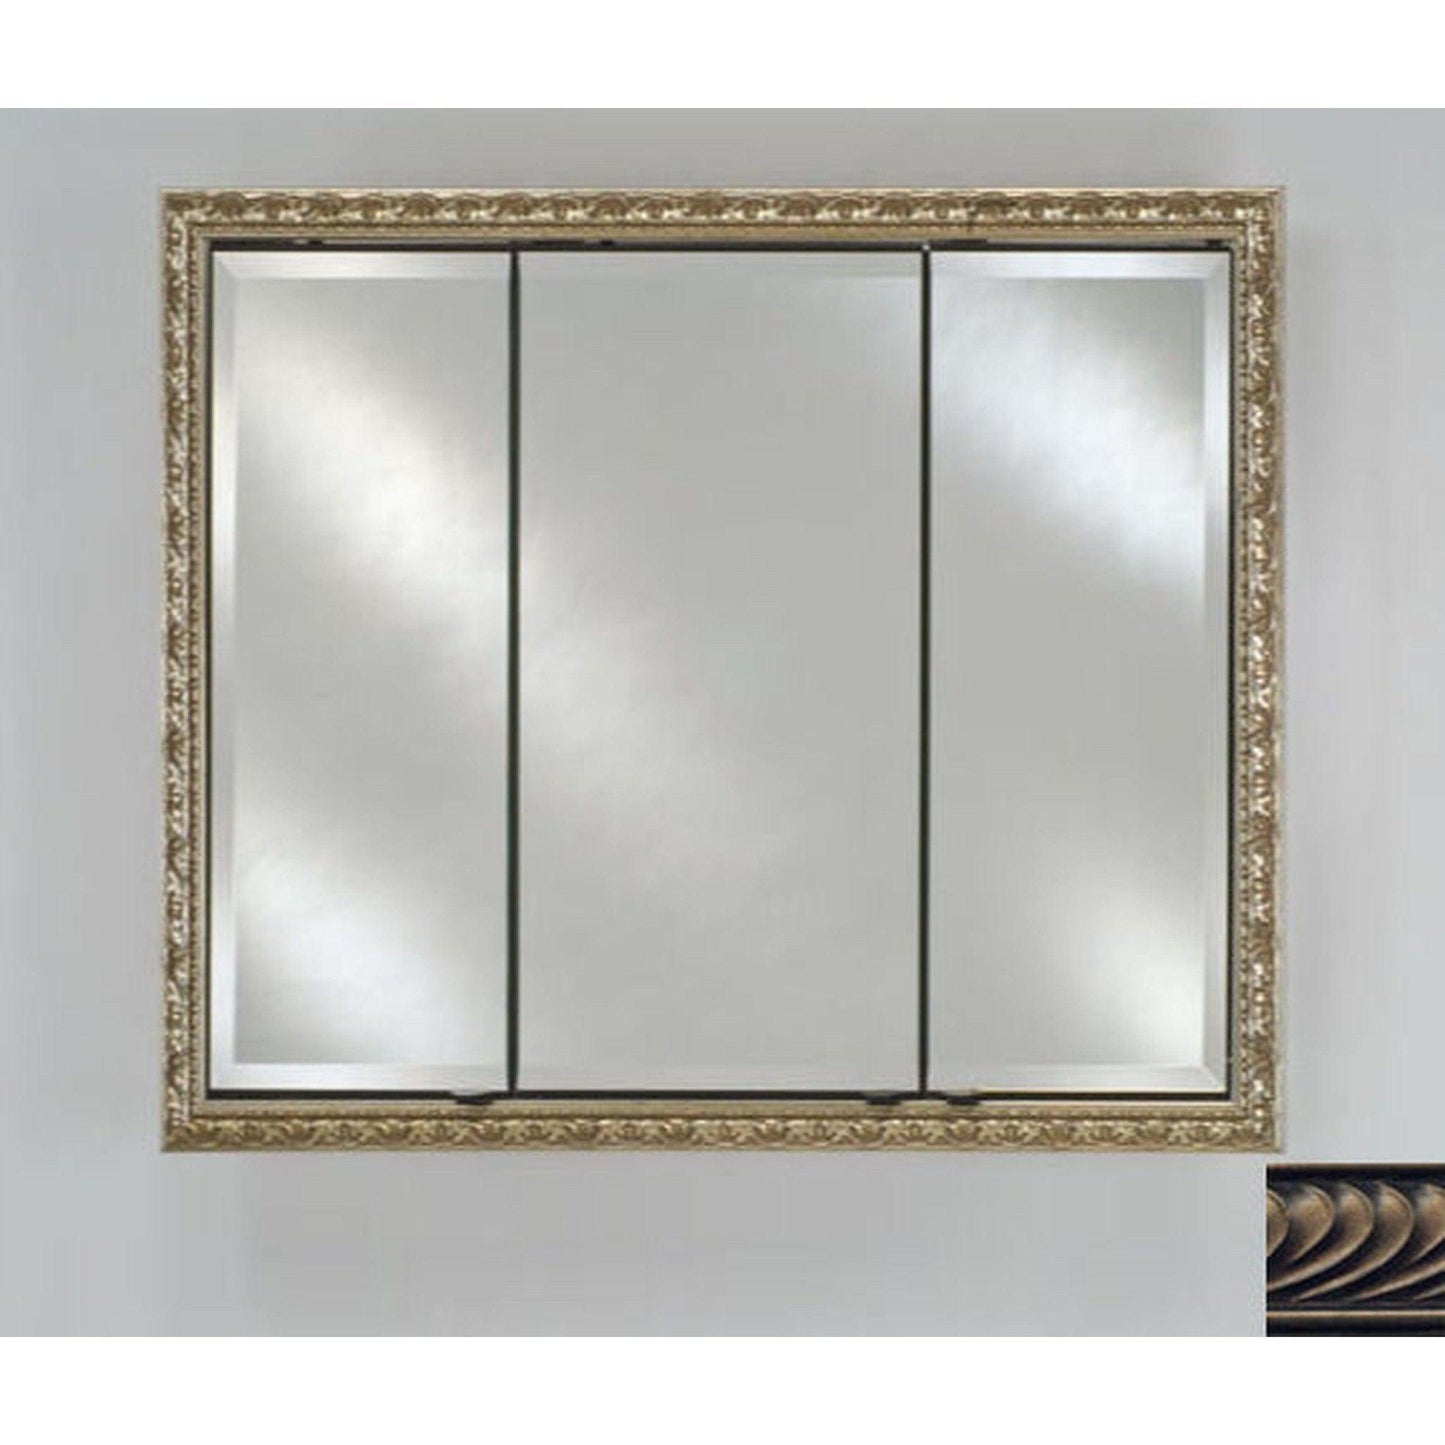 Afina Signature 38" x 30" Versailles Antique Pewter Recessed Triple Door Medicine Cabinet With Beveled Edge Mirror